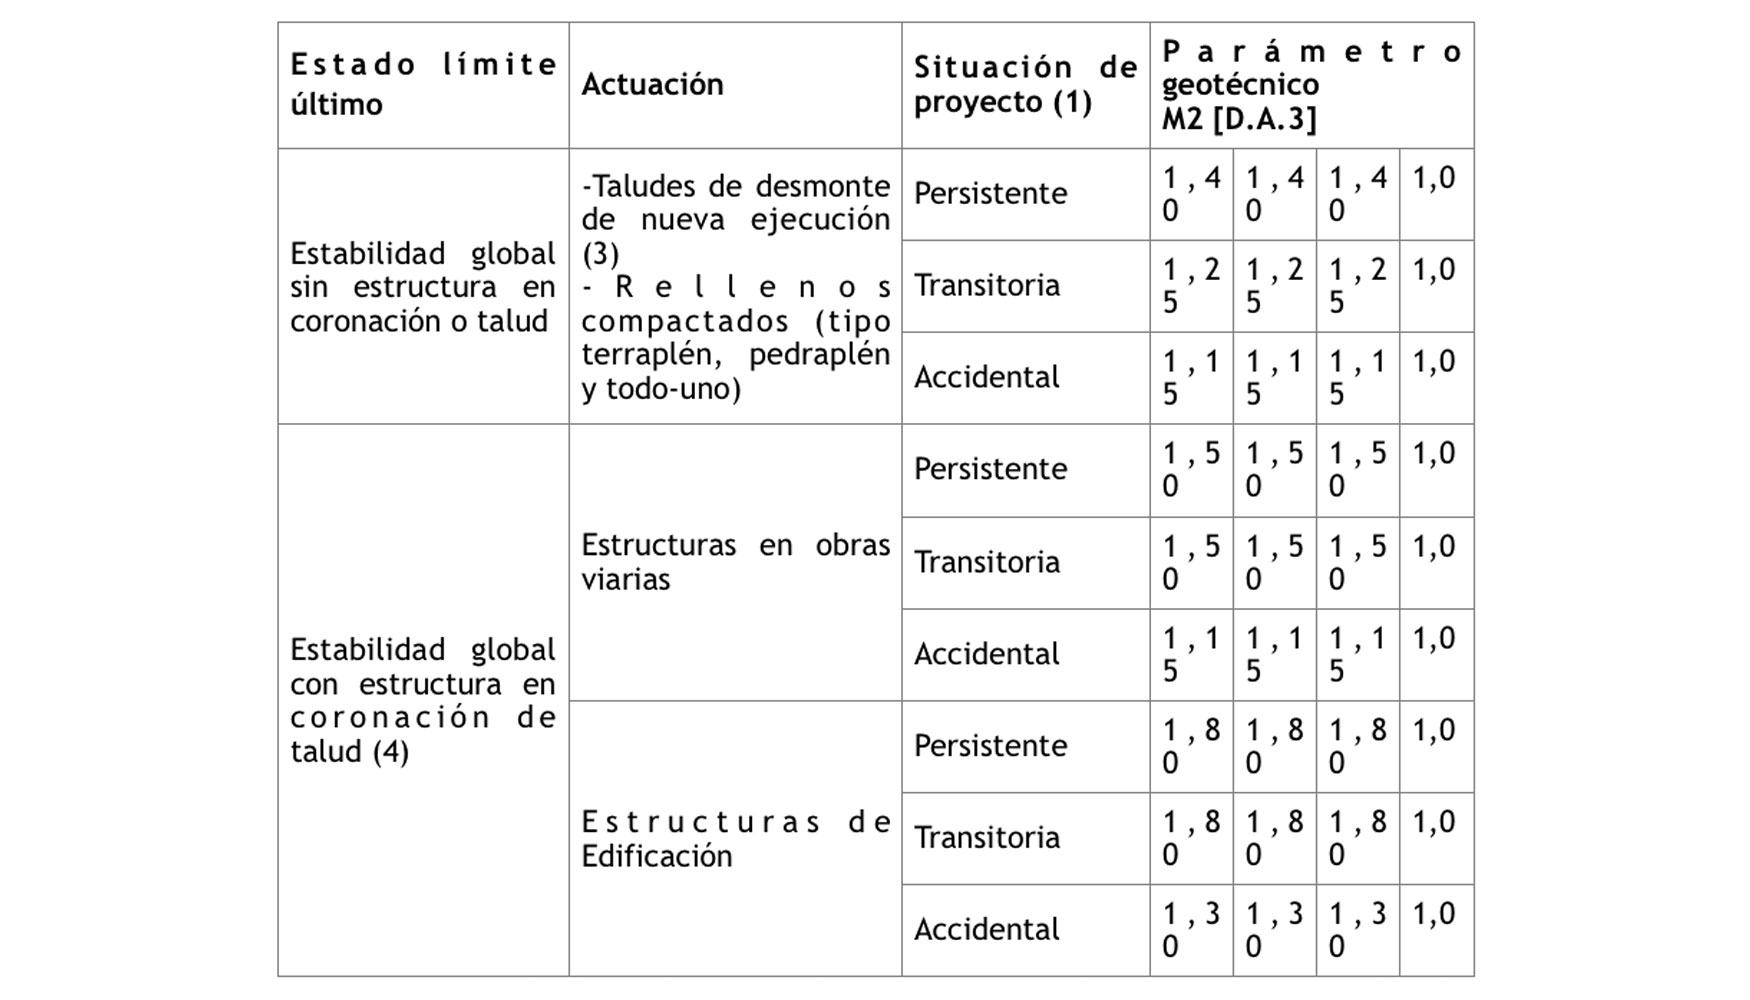 Tabla 5: Coeficientes parciales de los parmetros geotcnicos en situaciones permanentes, transitorias y accidentales